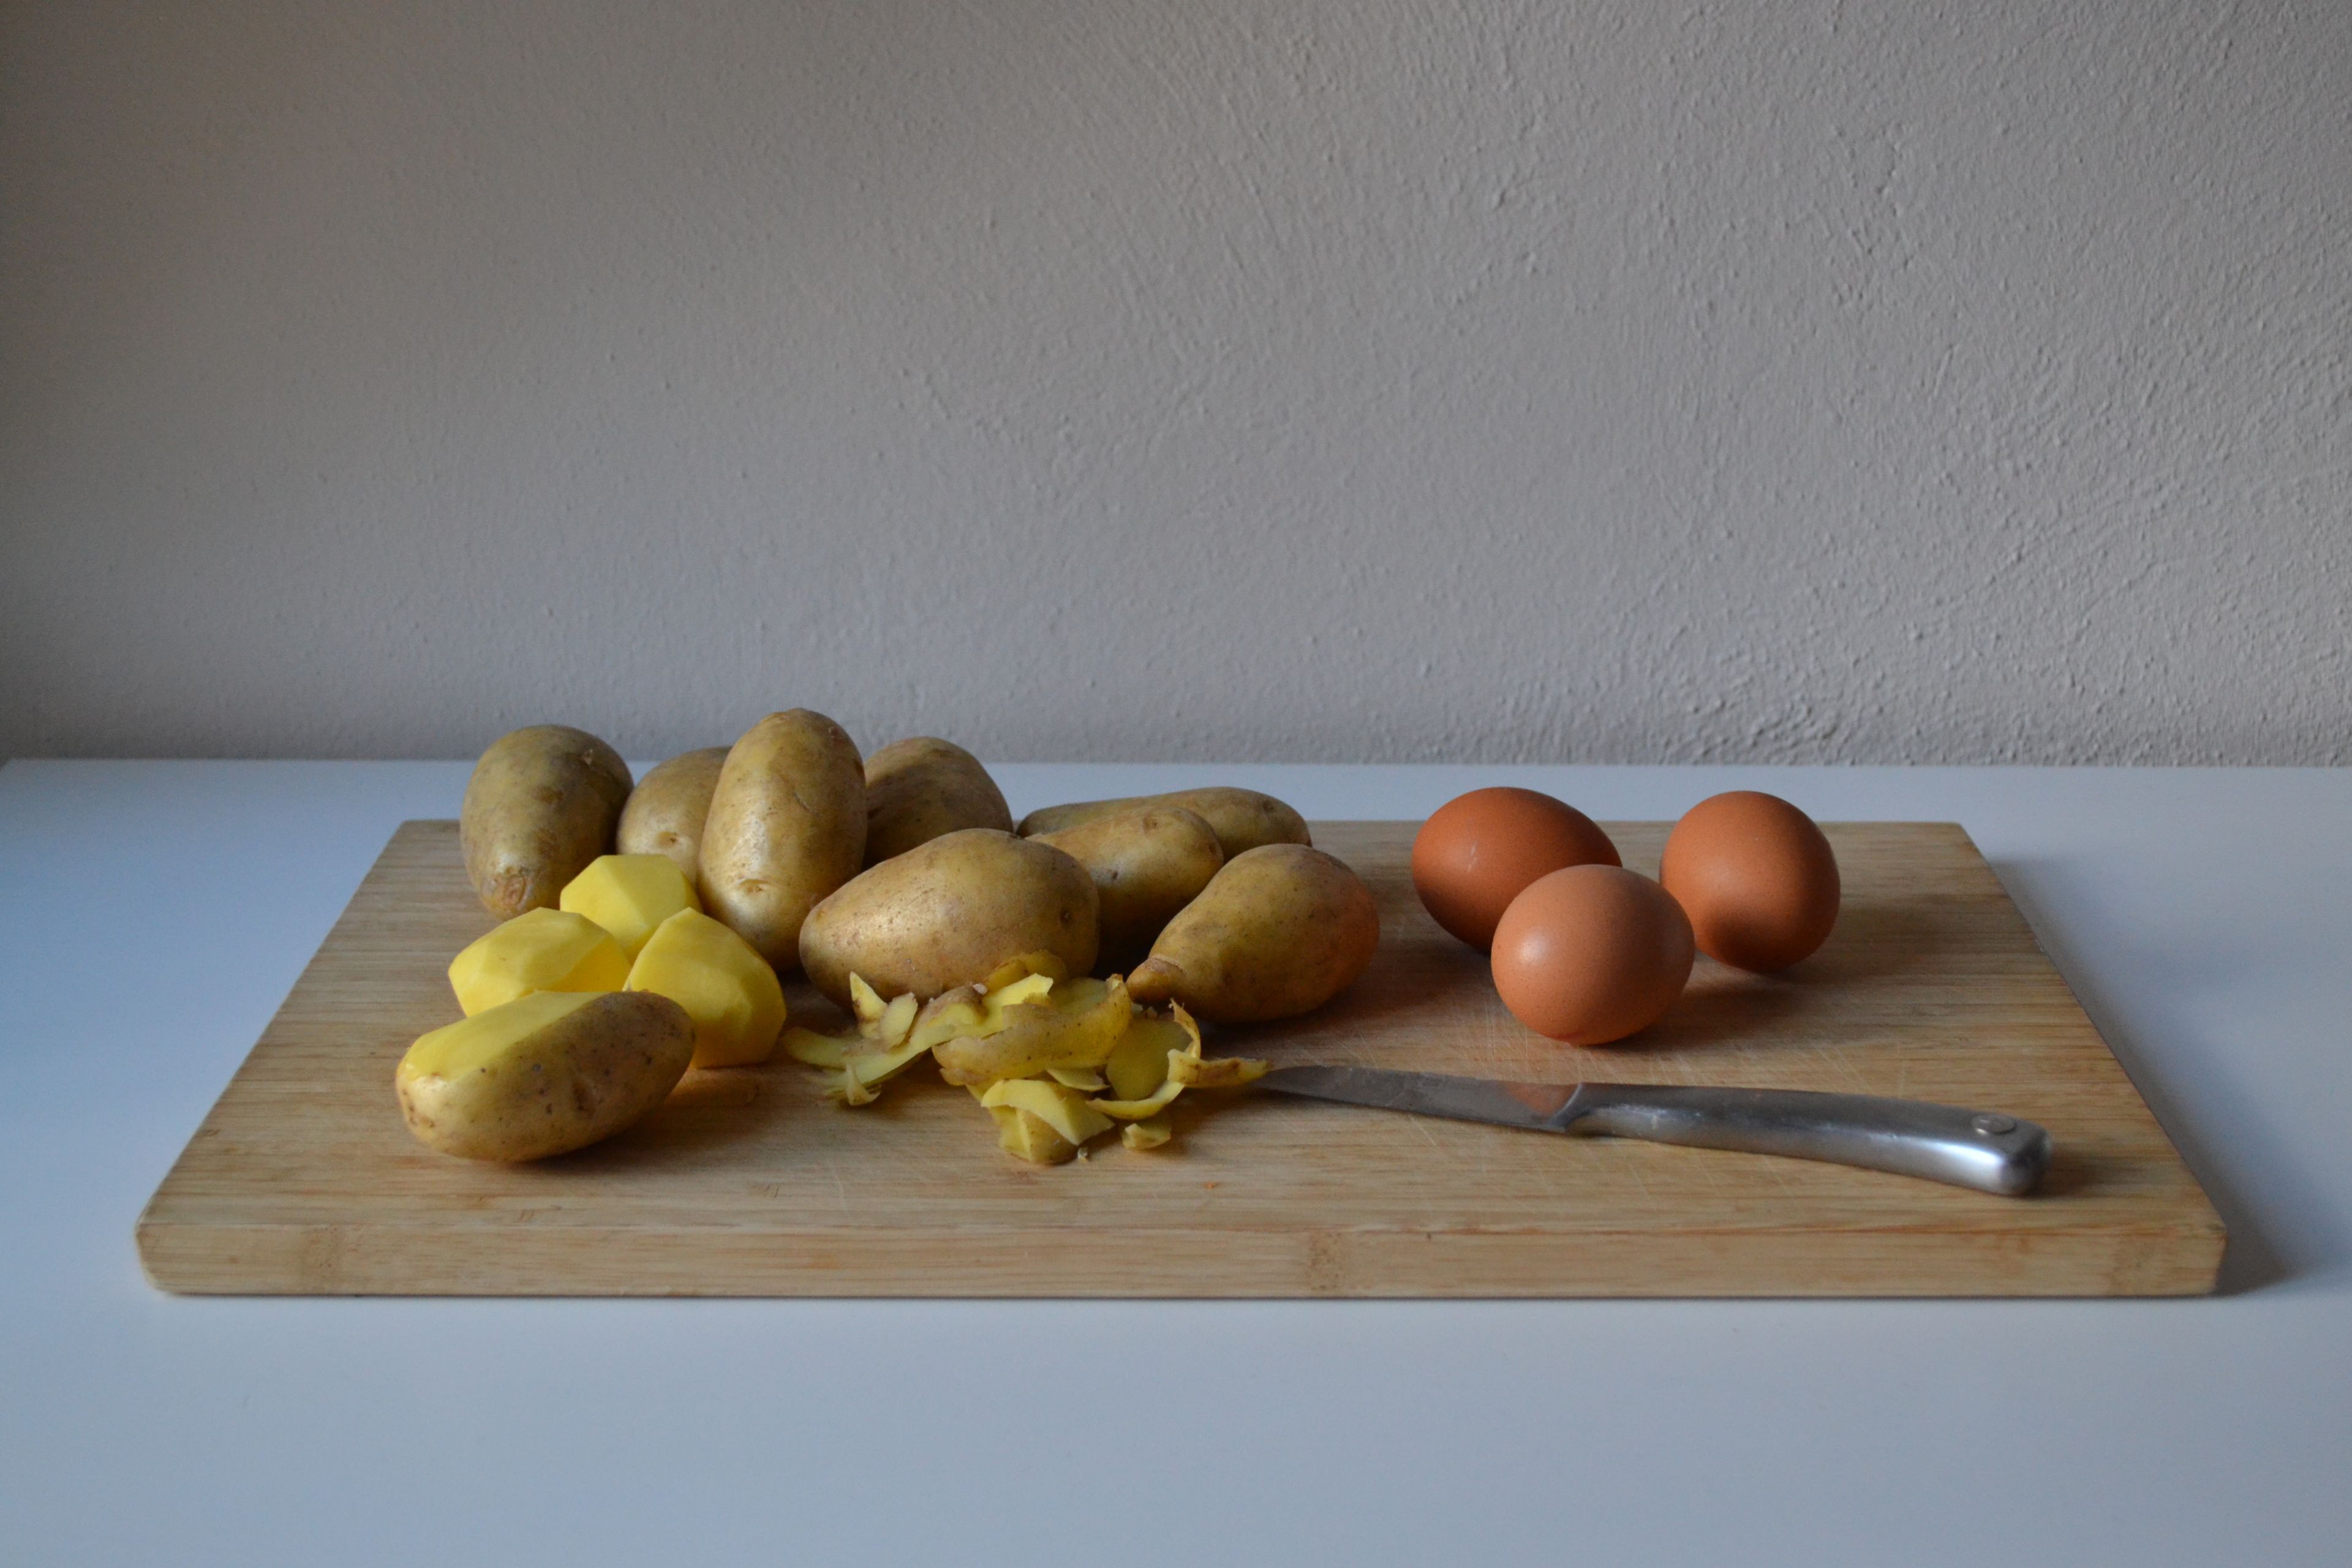 Kartoffeln schälen und ggf. die großen halbieren, damit alle etwa einheitlich groß sind. Entweder in einen Dampfgarer geben oder im Salzwasser ca. 15 - 20 Min. kochen (je nach Größe der Kartoffeln), bis sie weich aber noch bissfest sind. (Zu weiche Kartoffeln werden im Kartoffelsalat zu Matsch). Währenddessen die Eier ca. 10 Min. lang festkochen. Anschließend Kartoffeln und Eier abkühlen lassen.